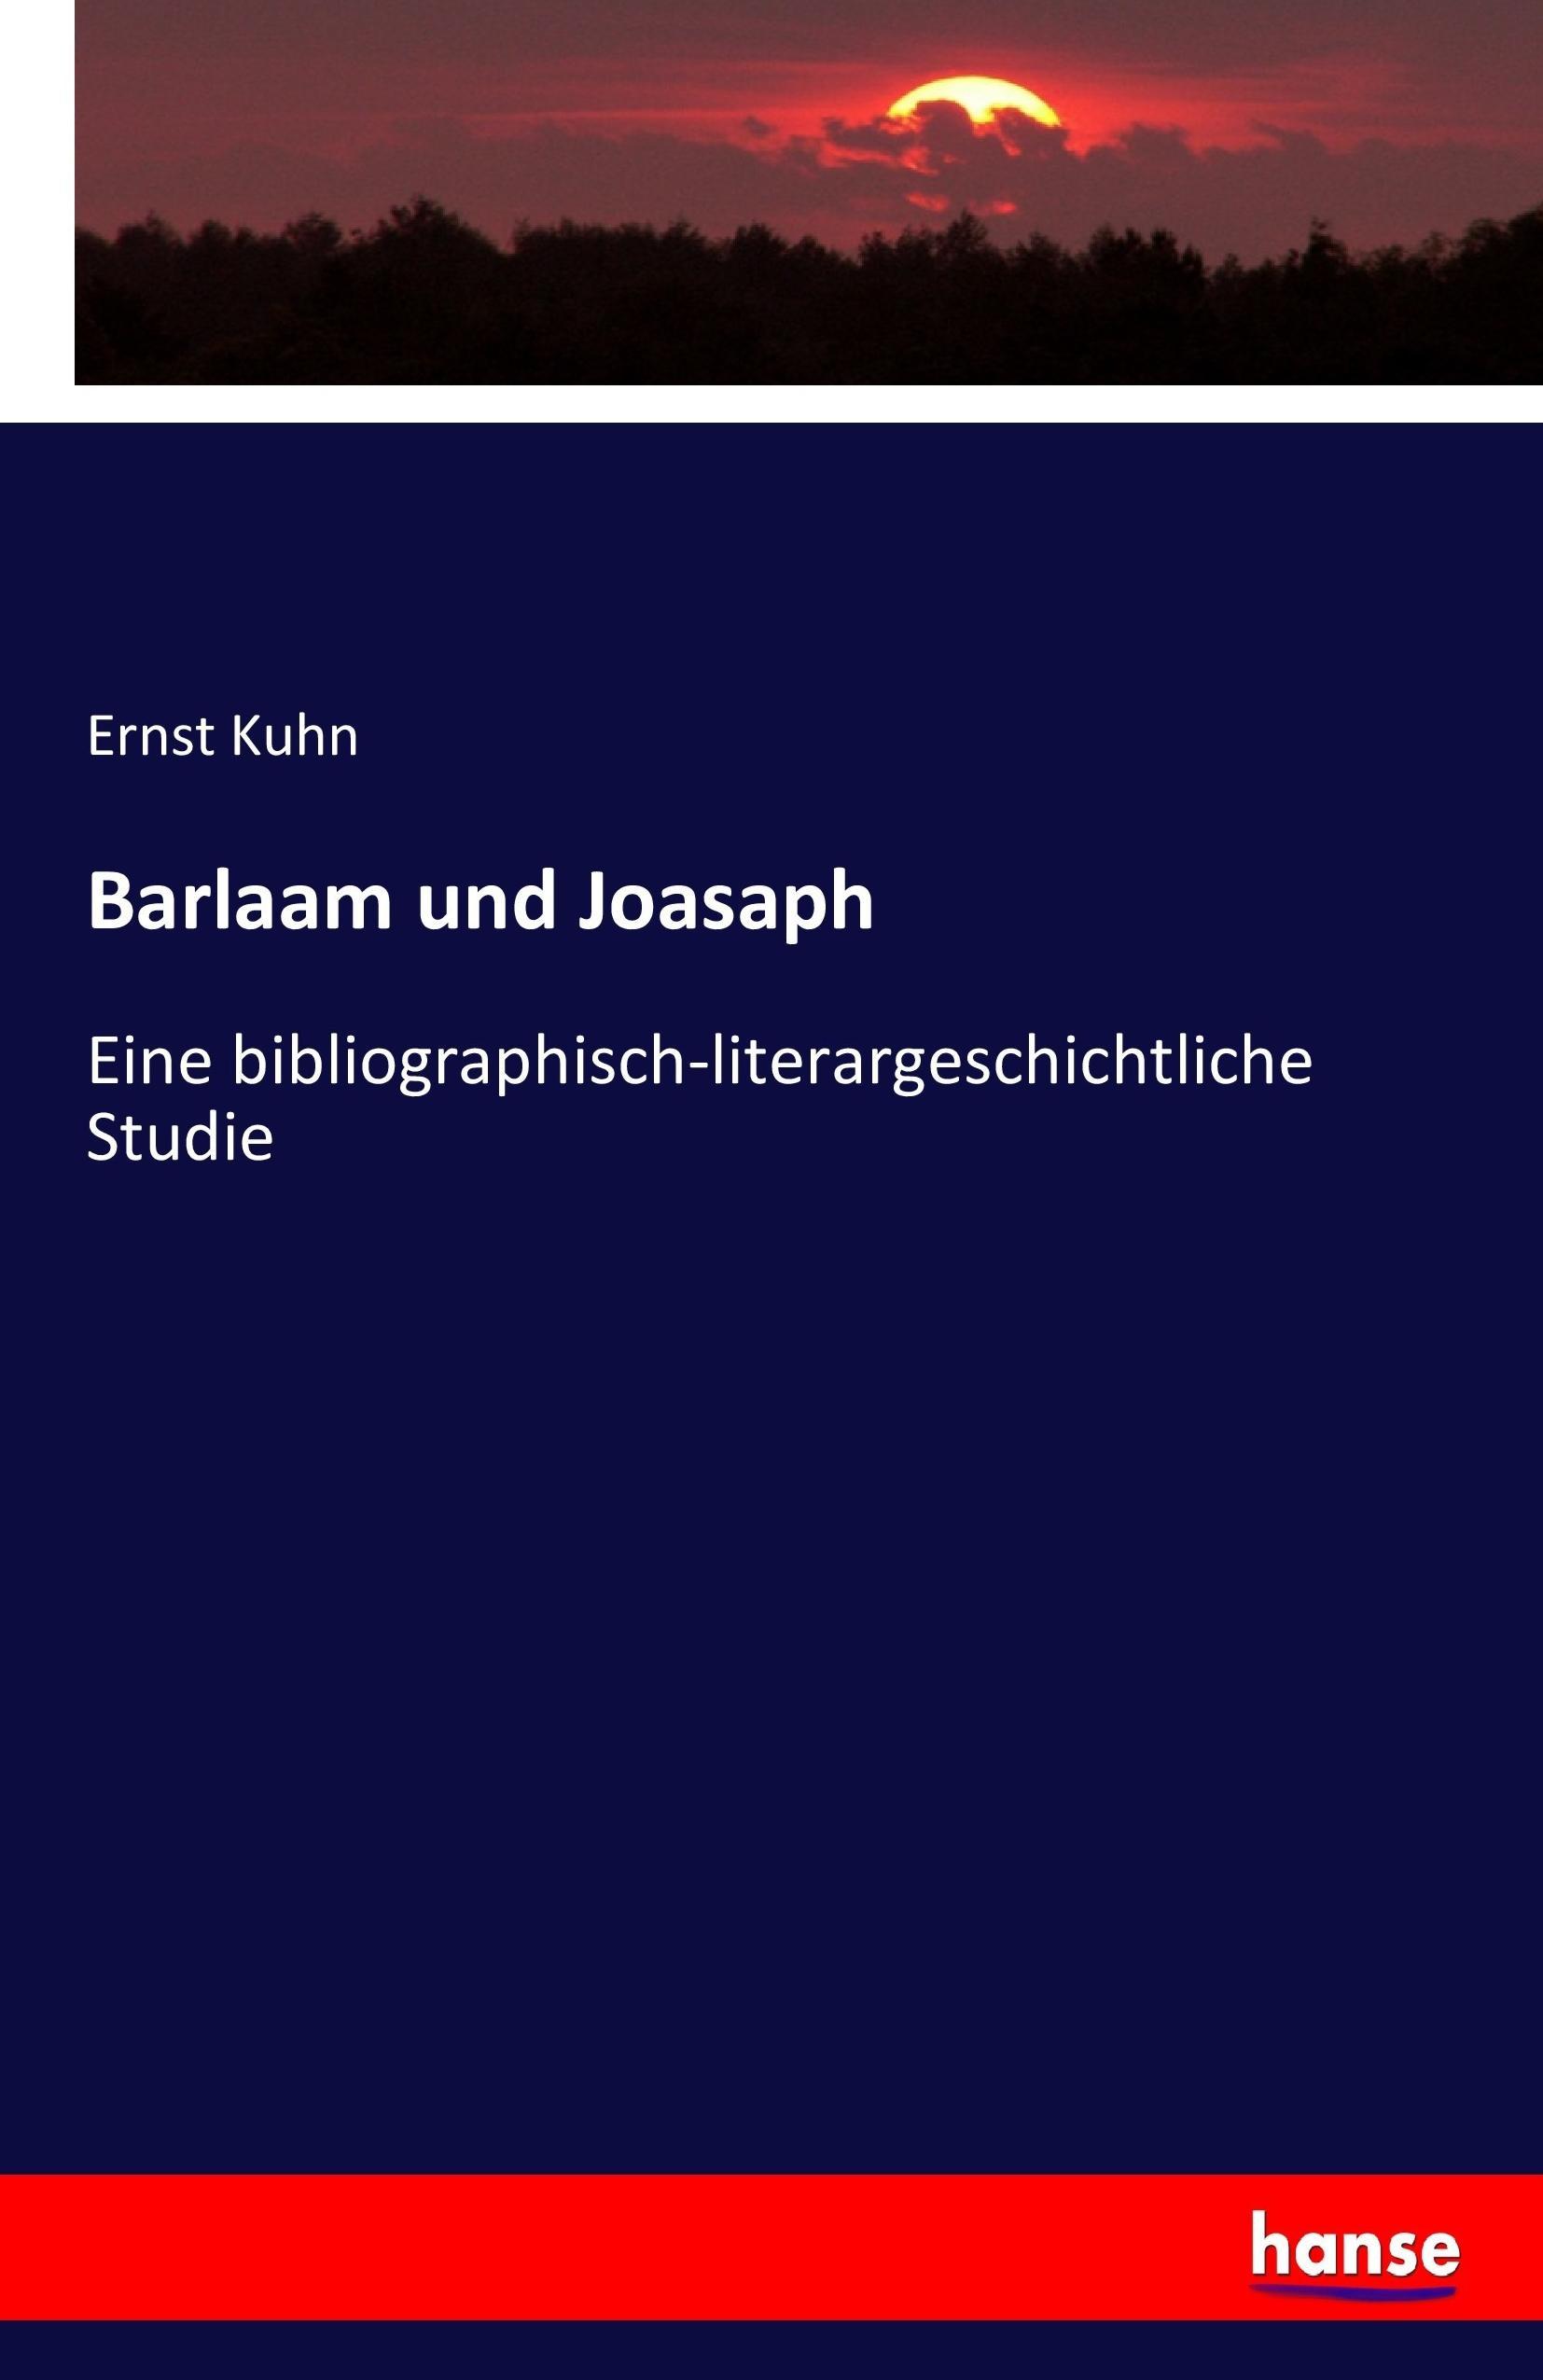 Barlaam und Joasaph | Eine bibliographisch-literargeschichtliche Studie | Ernst Kuhn | Taschenbuch | Paperback | 92 S. | Deutsch | 2017 | hansebooks | EAN 9783743684072 - Kuhn, Ernst